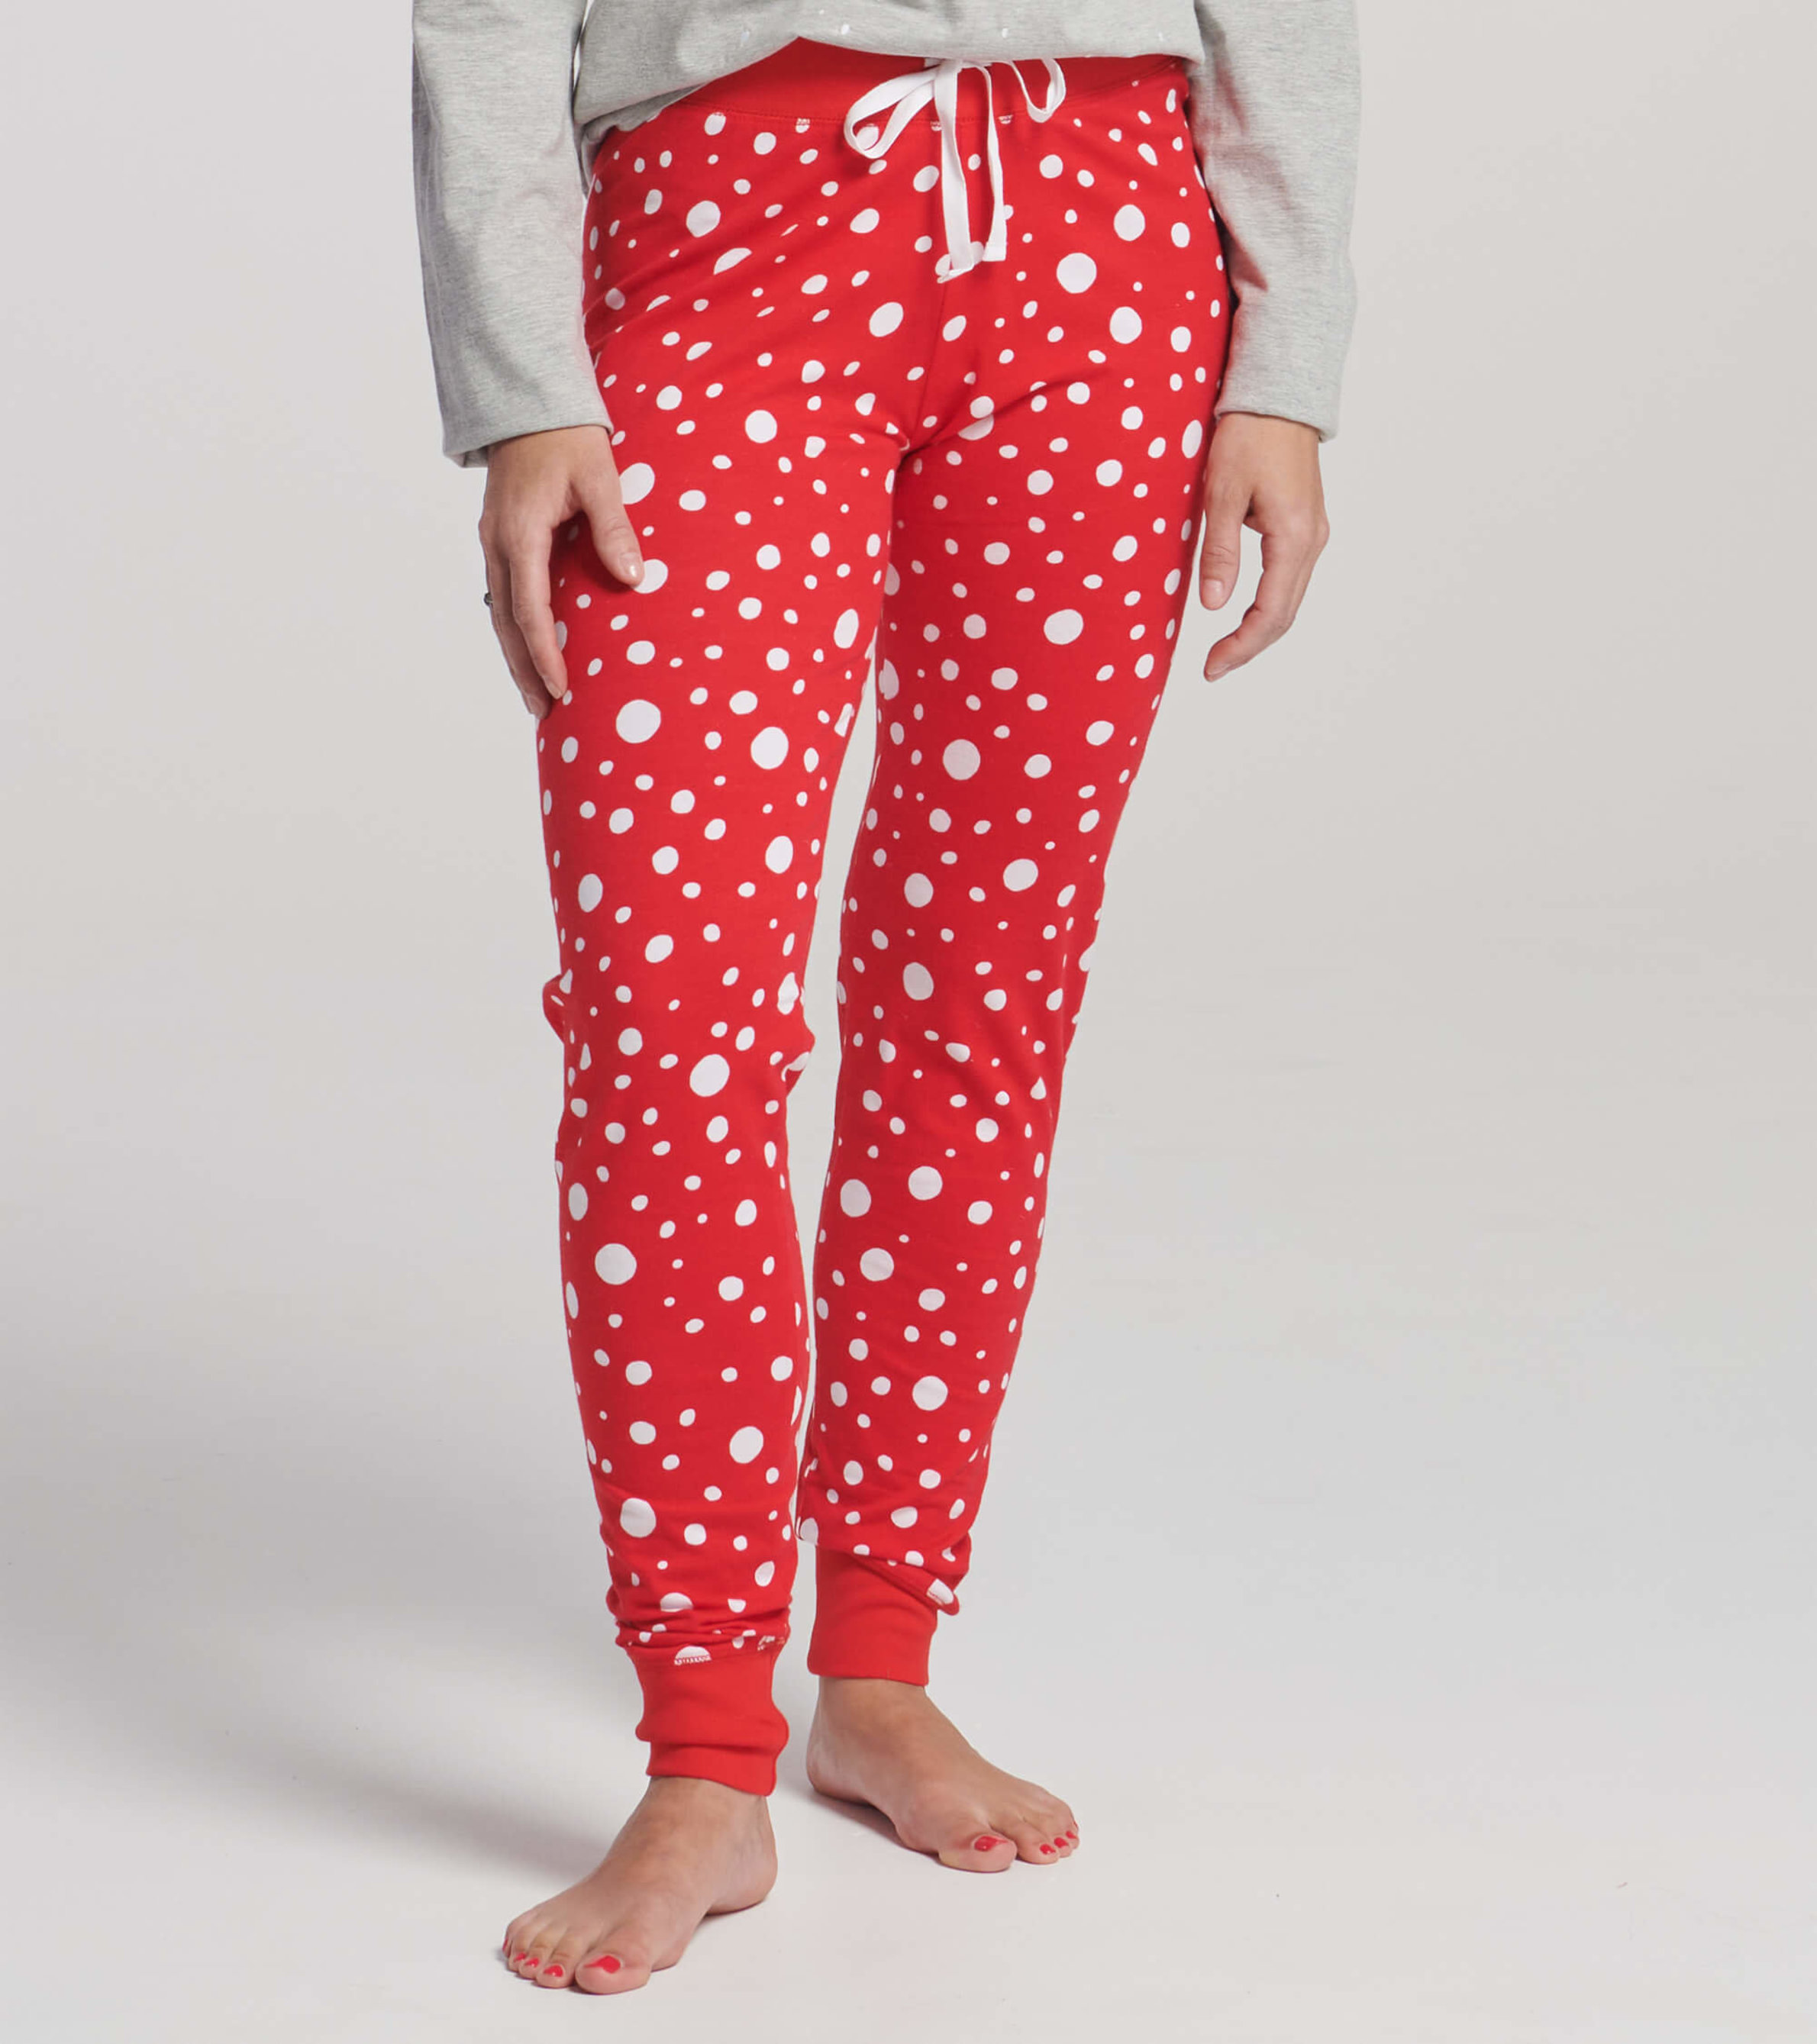 Softball Christmas Pajama Leggings for Sale by dontlaughswim